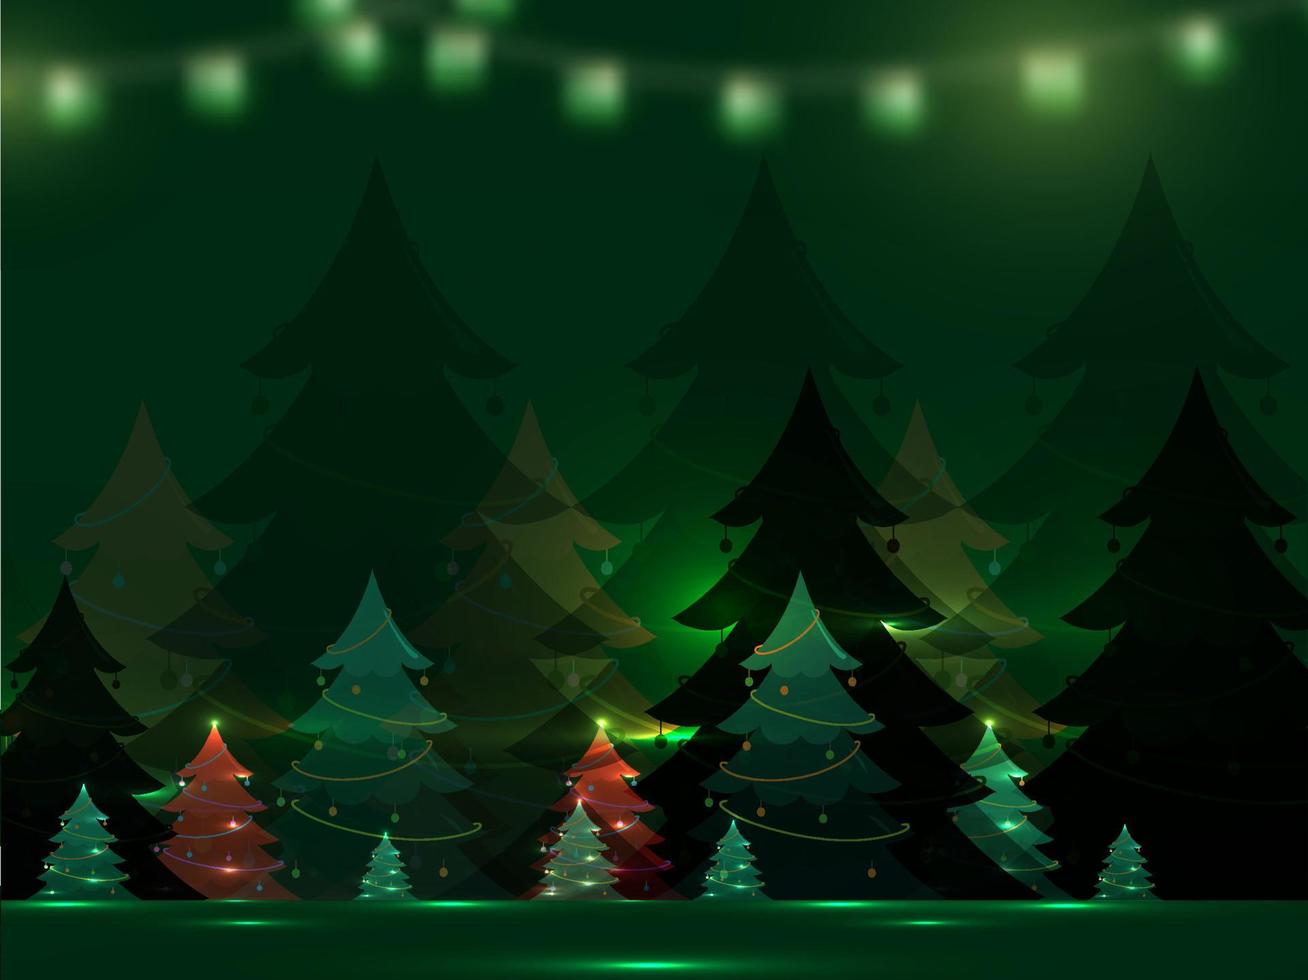 dekorativ xmas träd med lampor effekt på grön bakgrund. vektor